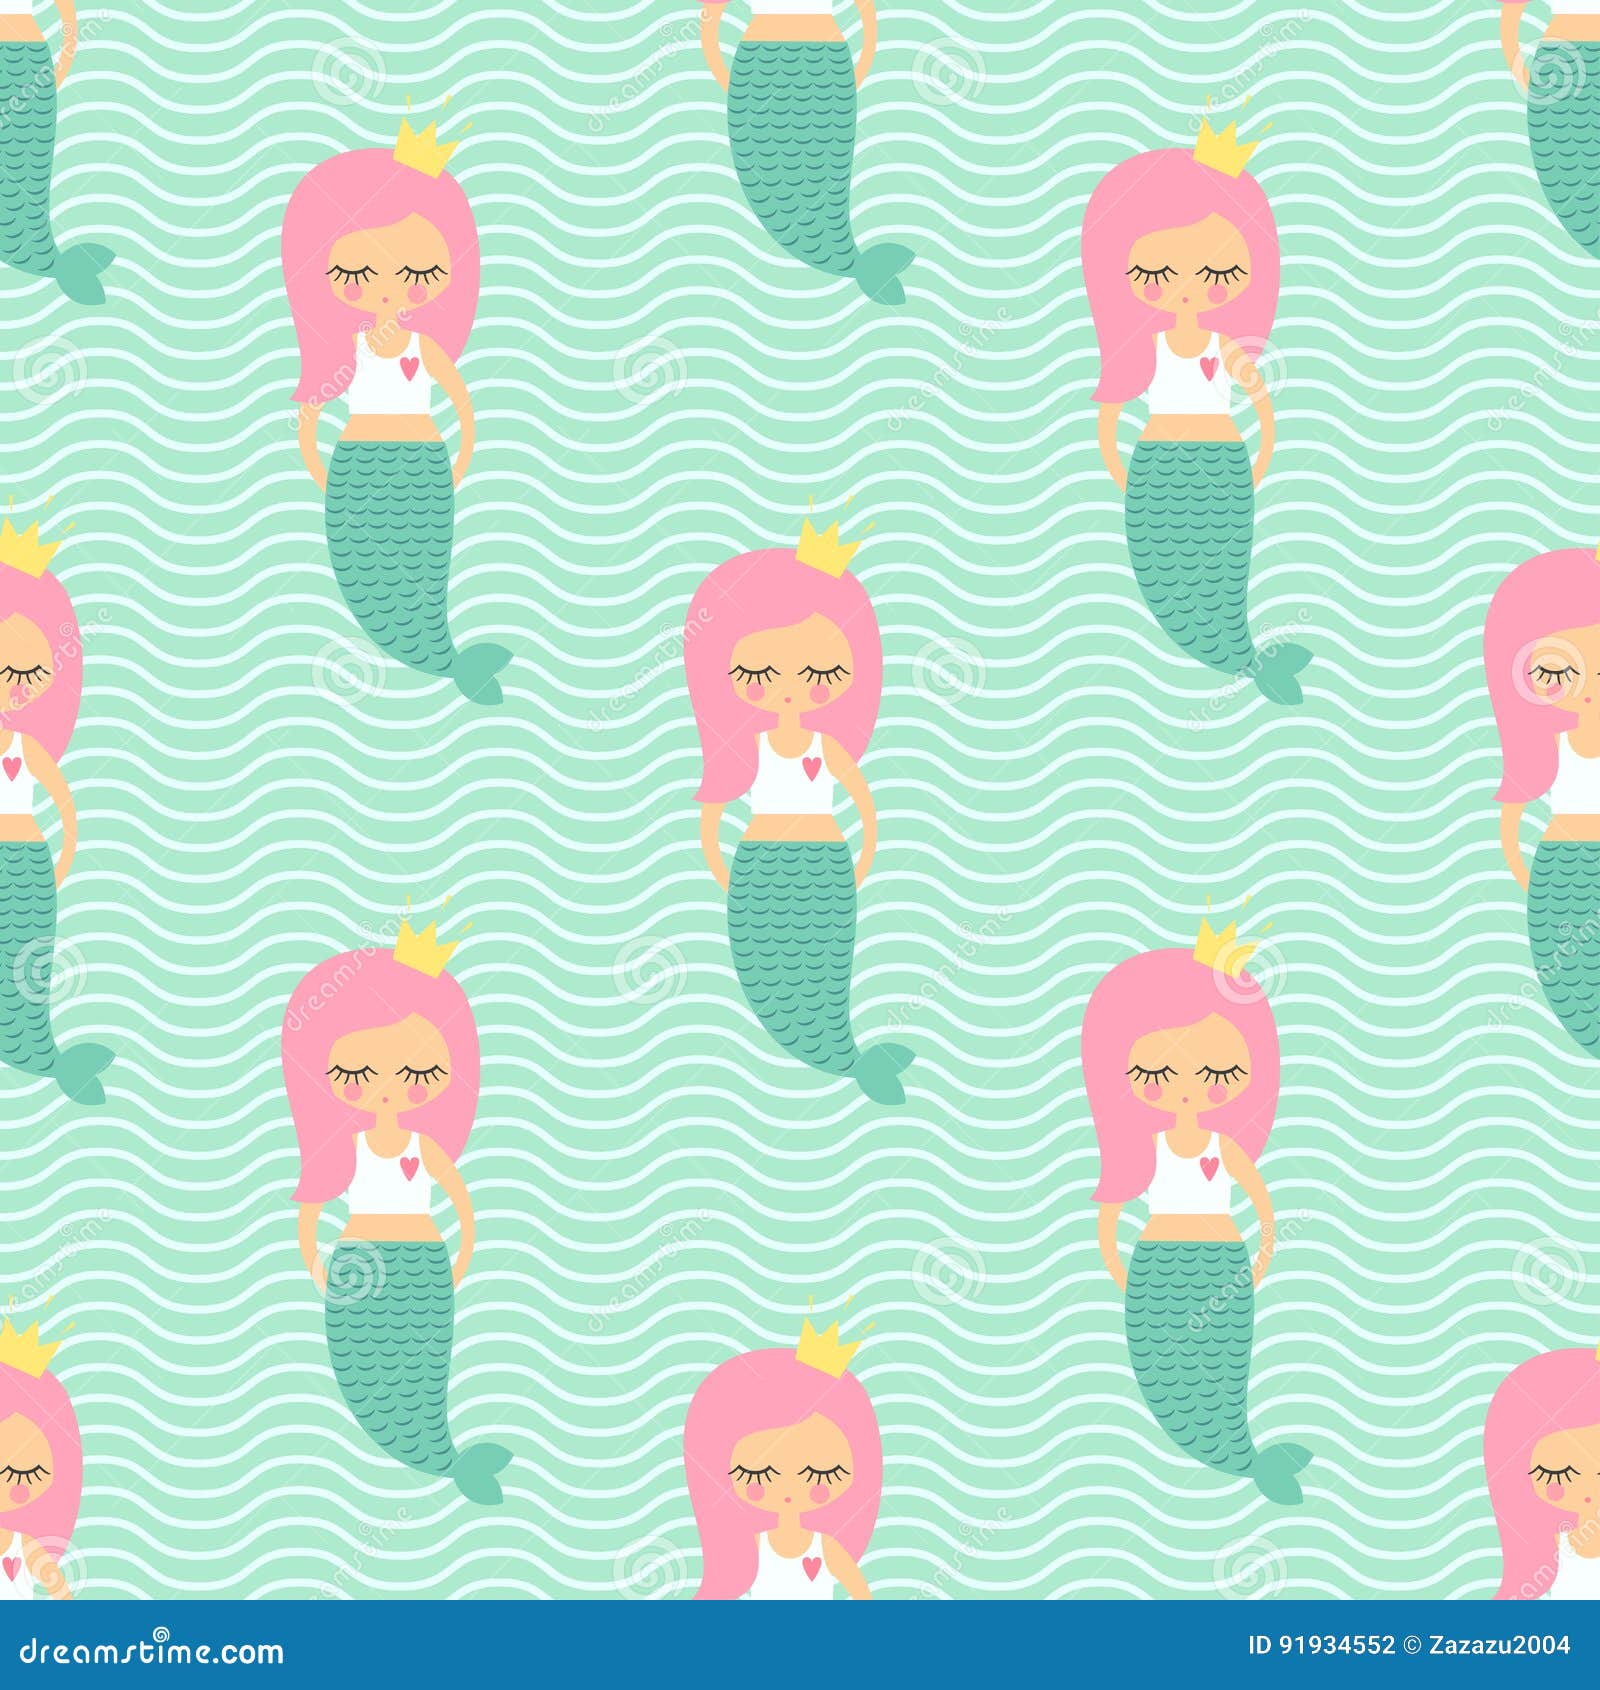 Modelo inconsútil del pelo de la muchacha rosada linda de la sirena en fondo de las ondas de verde menta Fondo del mar del vector para los niños Diseño para la tela, materia textil, decoración